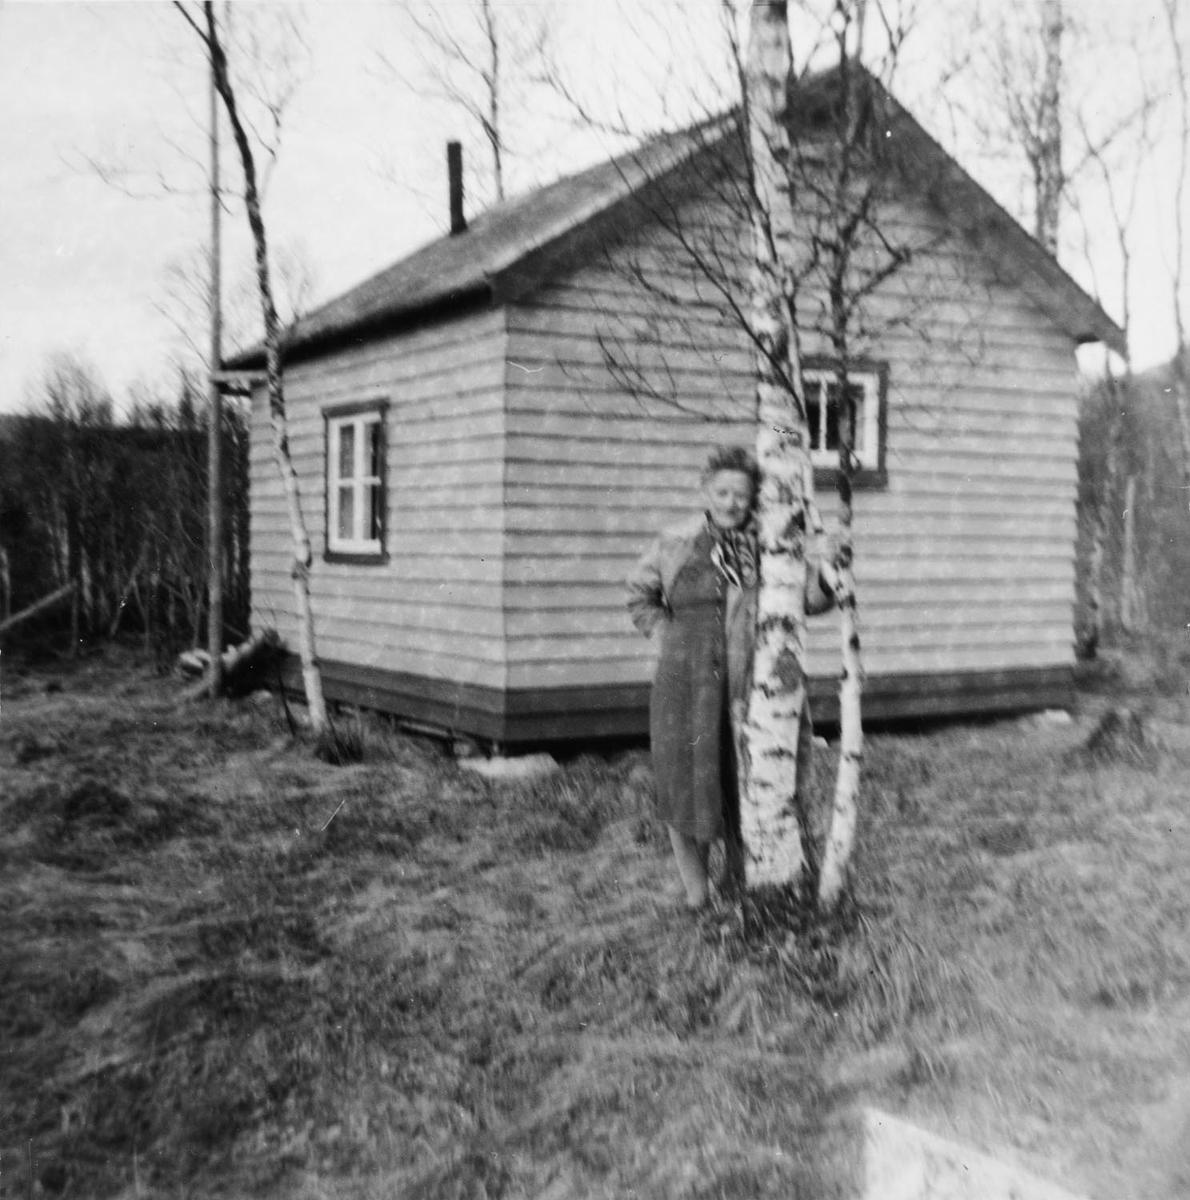 Leirfjord, Leira, Sommarsete. Ragna Leland foran hytta "Fossestua" som lå på Sommarsete.

Mormor til Kirsti, Marie Leland (jordmor i Leirfjord) var fra Træna.